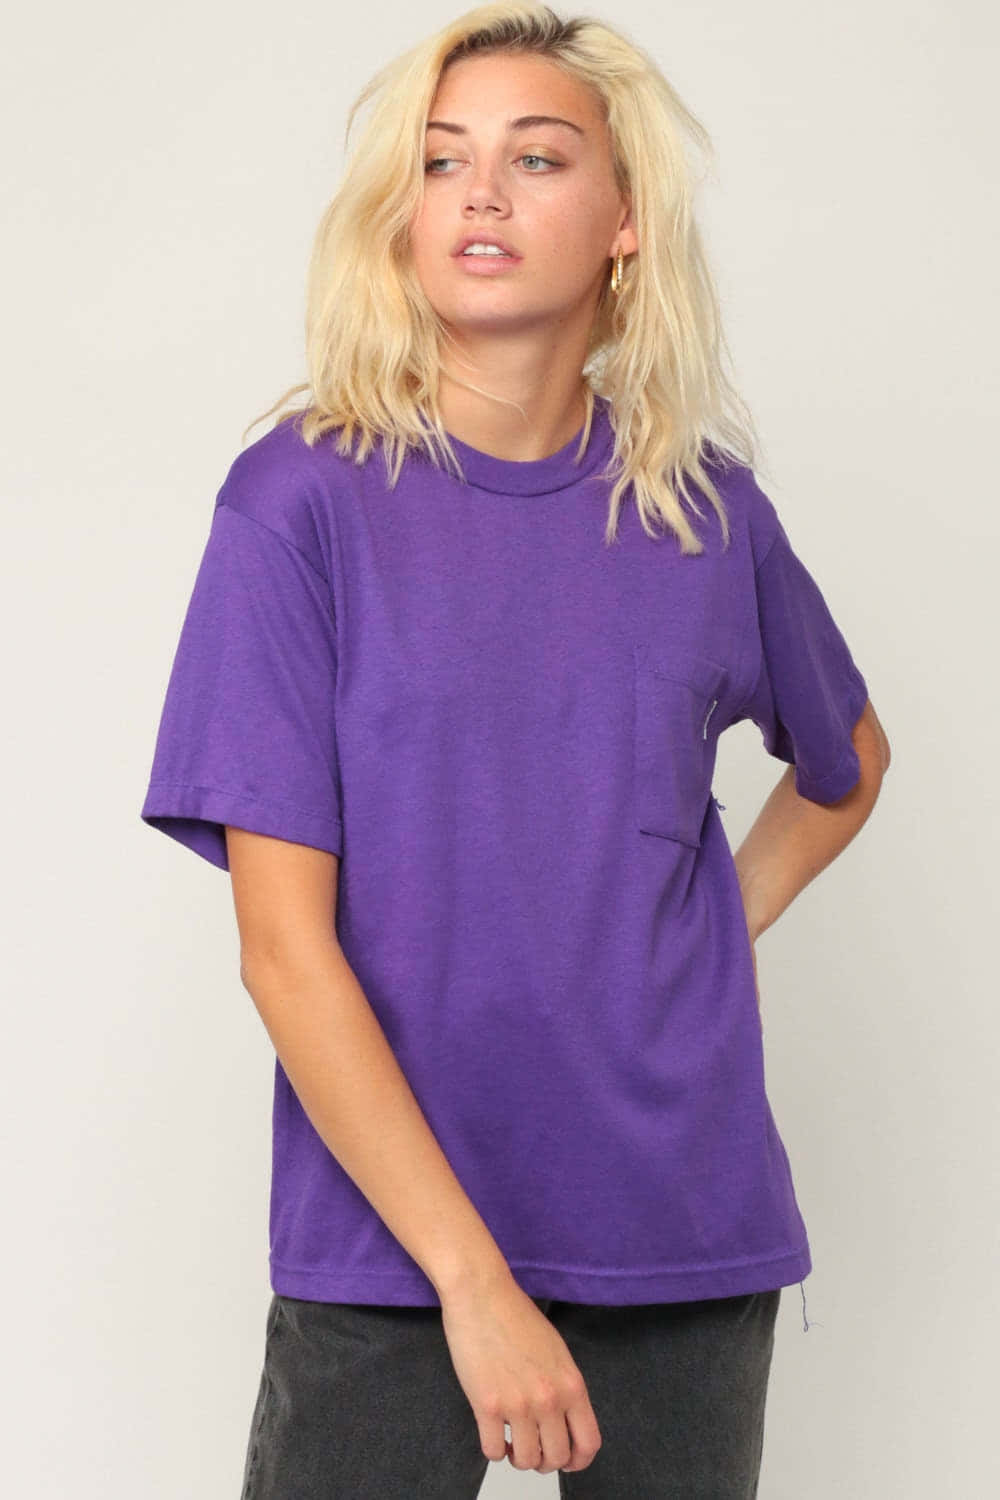 Stylish Purple Shirt Wallpaper